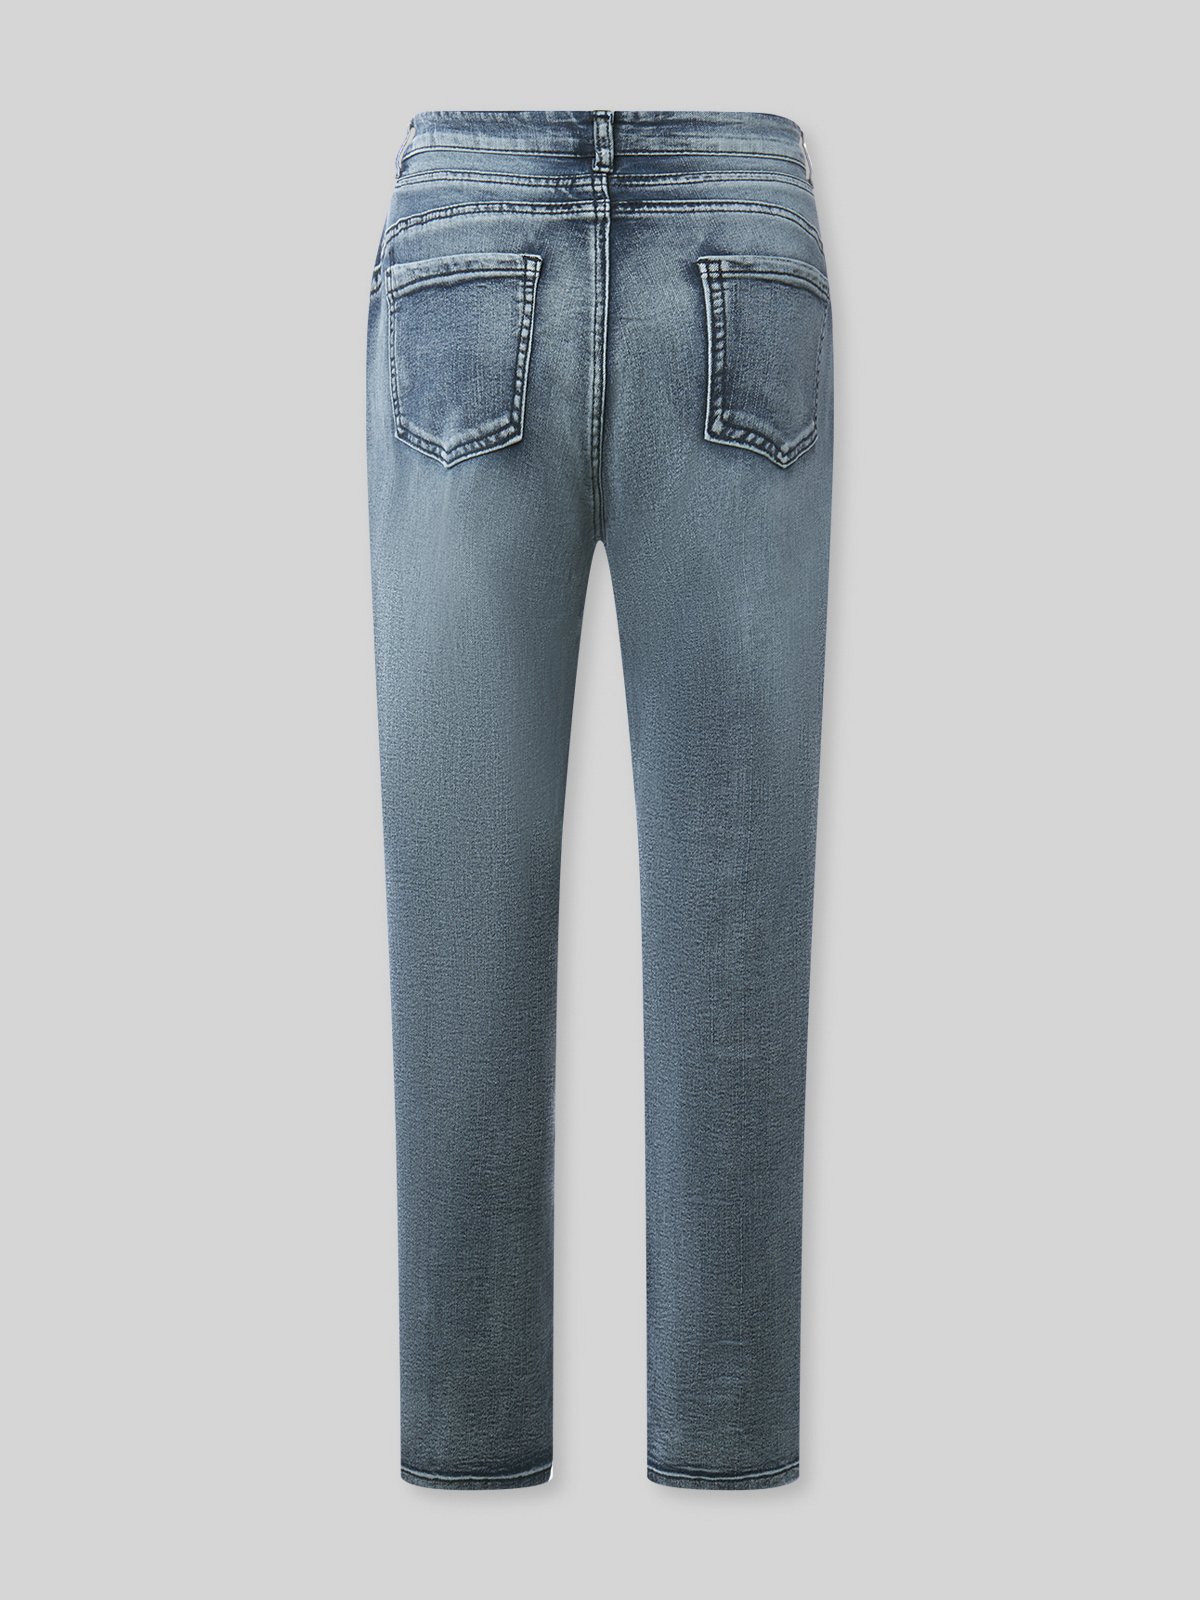 Blau Denim Einfach Unifarben Taschen Jeans